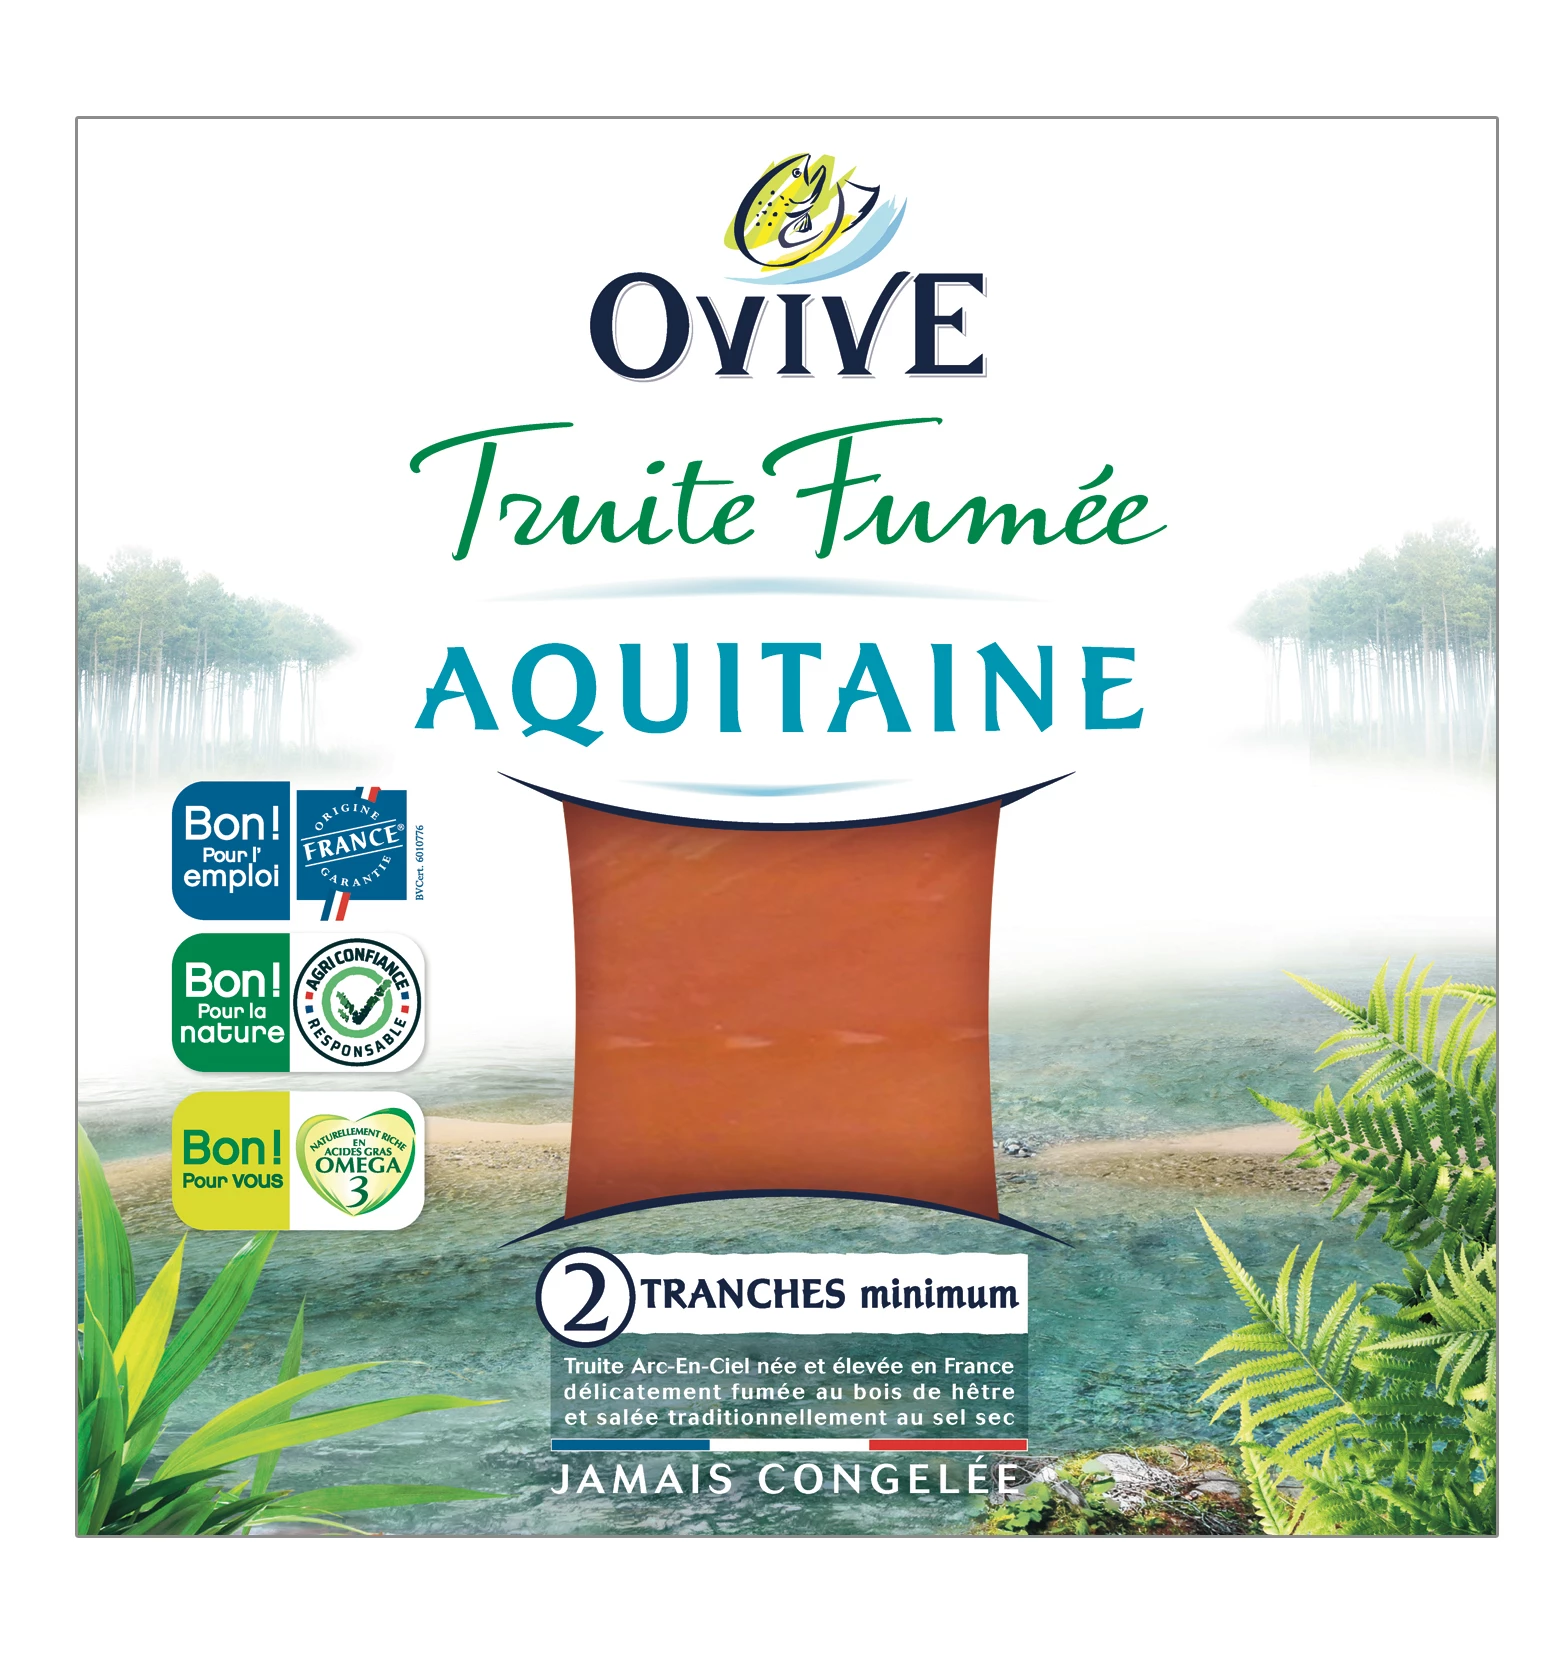 Truite Fum Aquitaine Ovive 2t